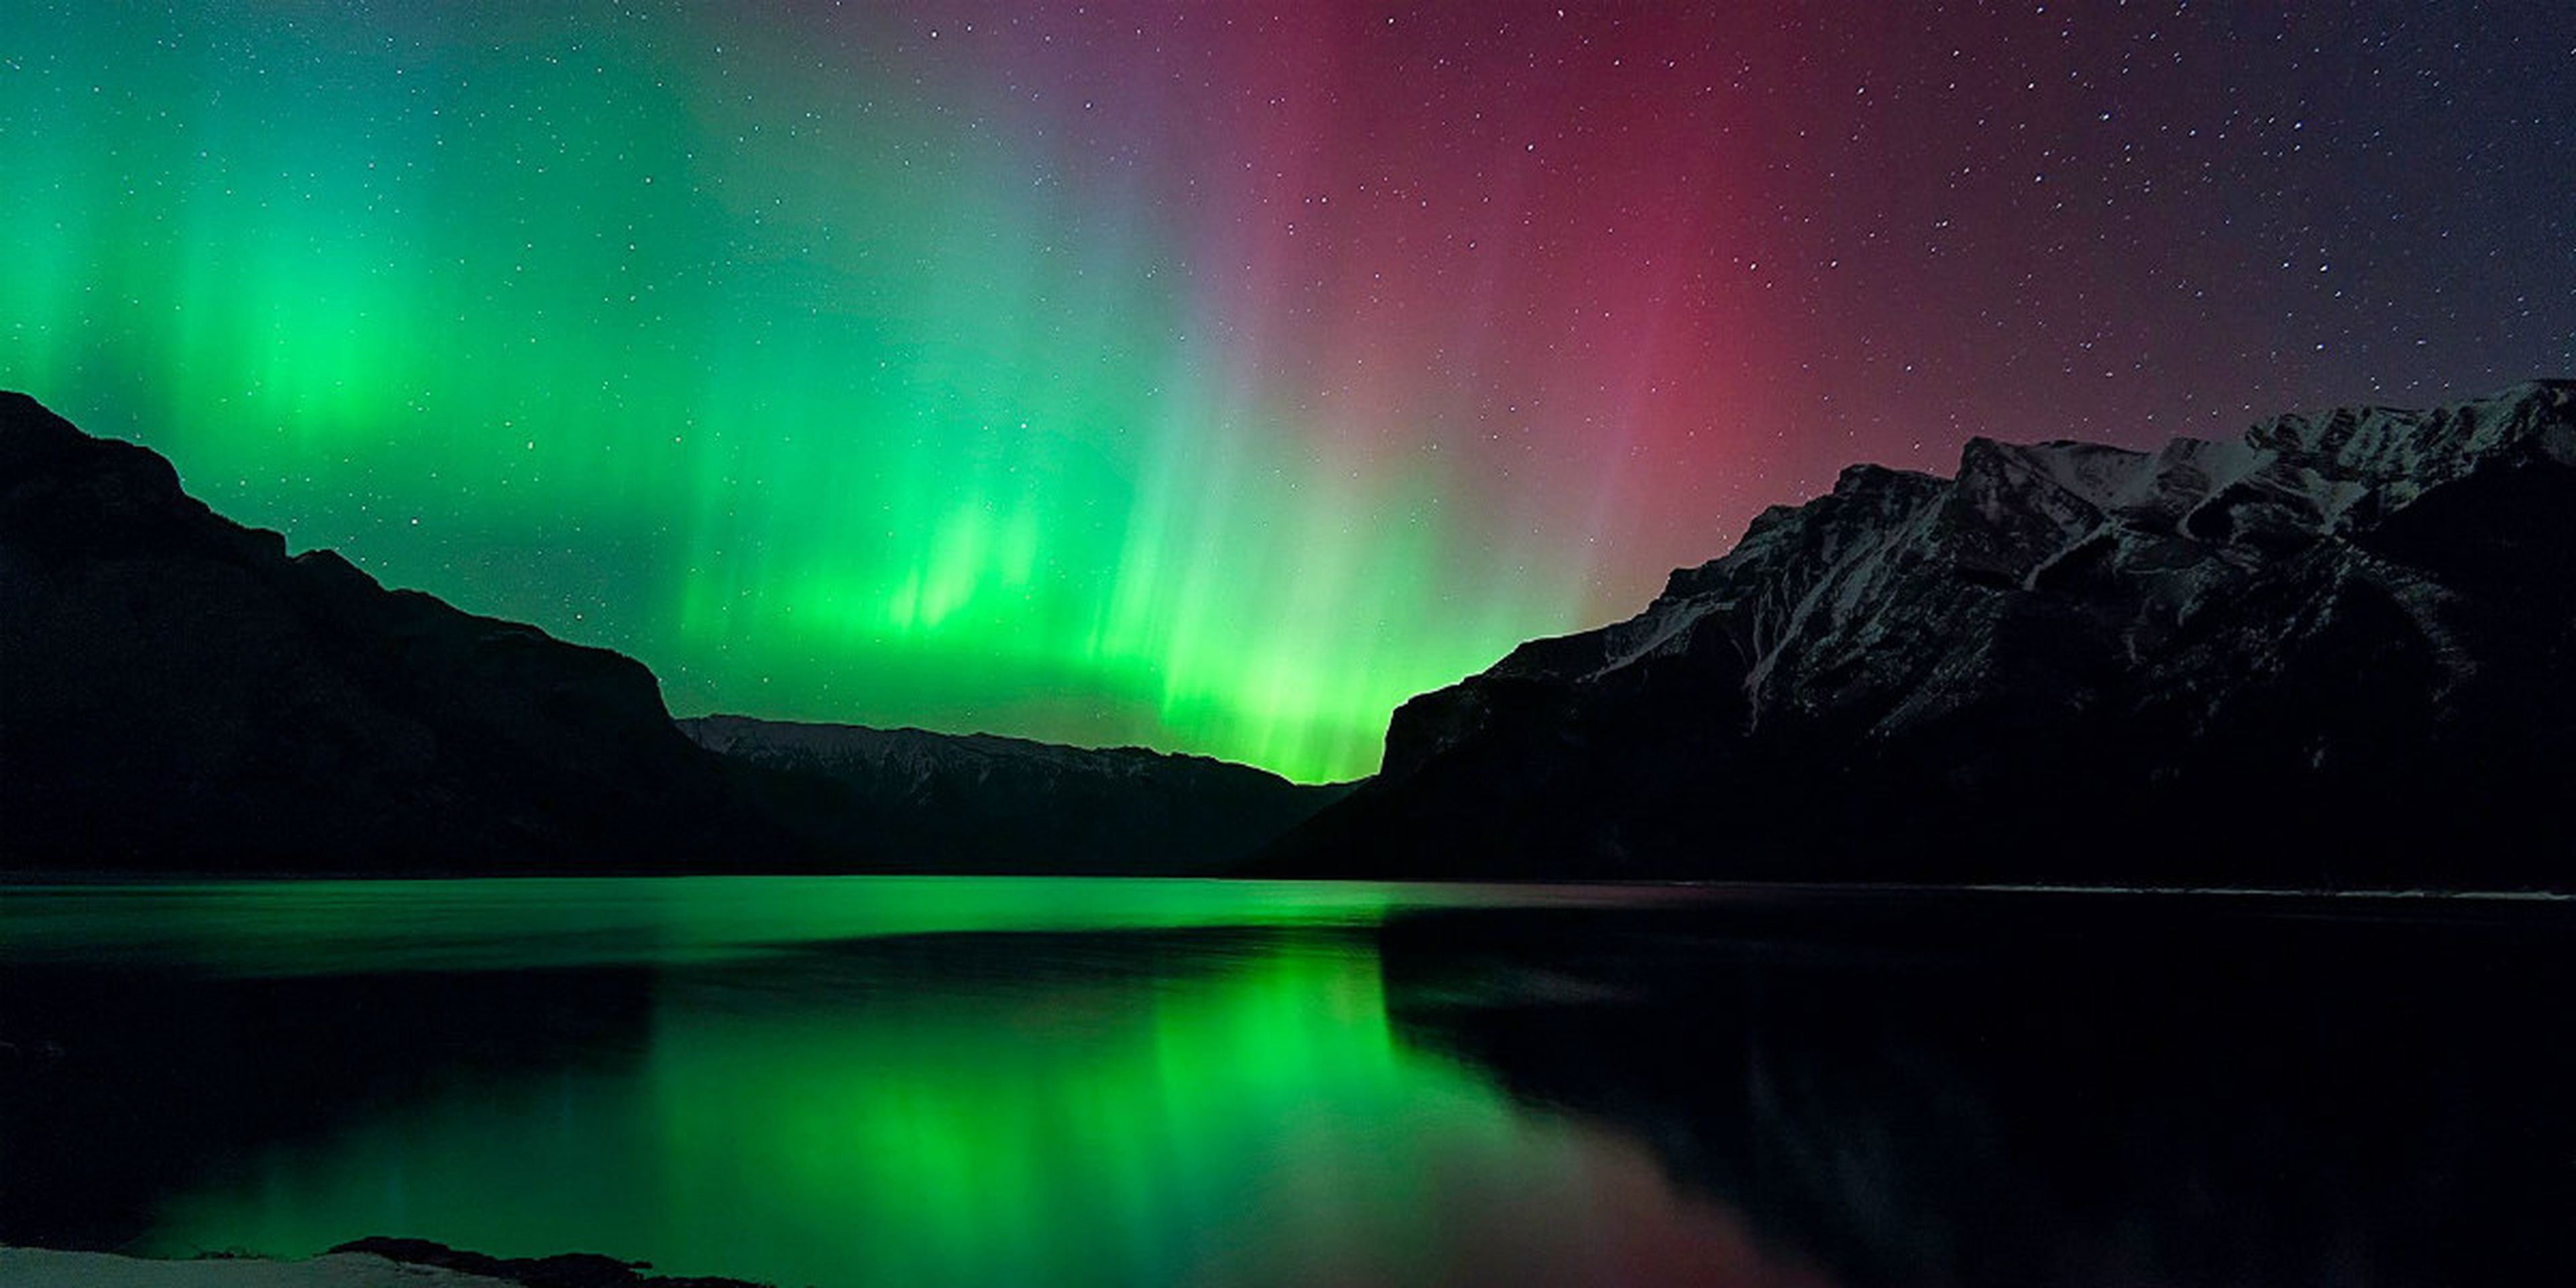 La aurora boreal es una muestra visible de partículas atómicas cargadas eléctricamente procedentes del Sol que interactúan con el campo magnético de la Tierra.